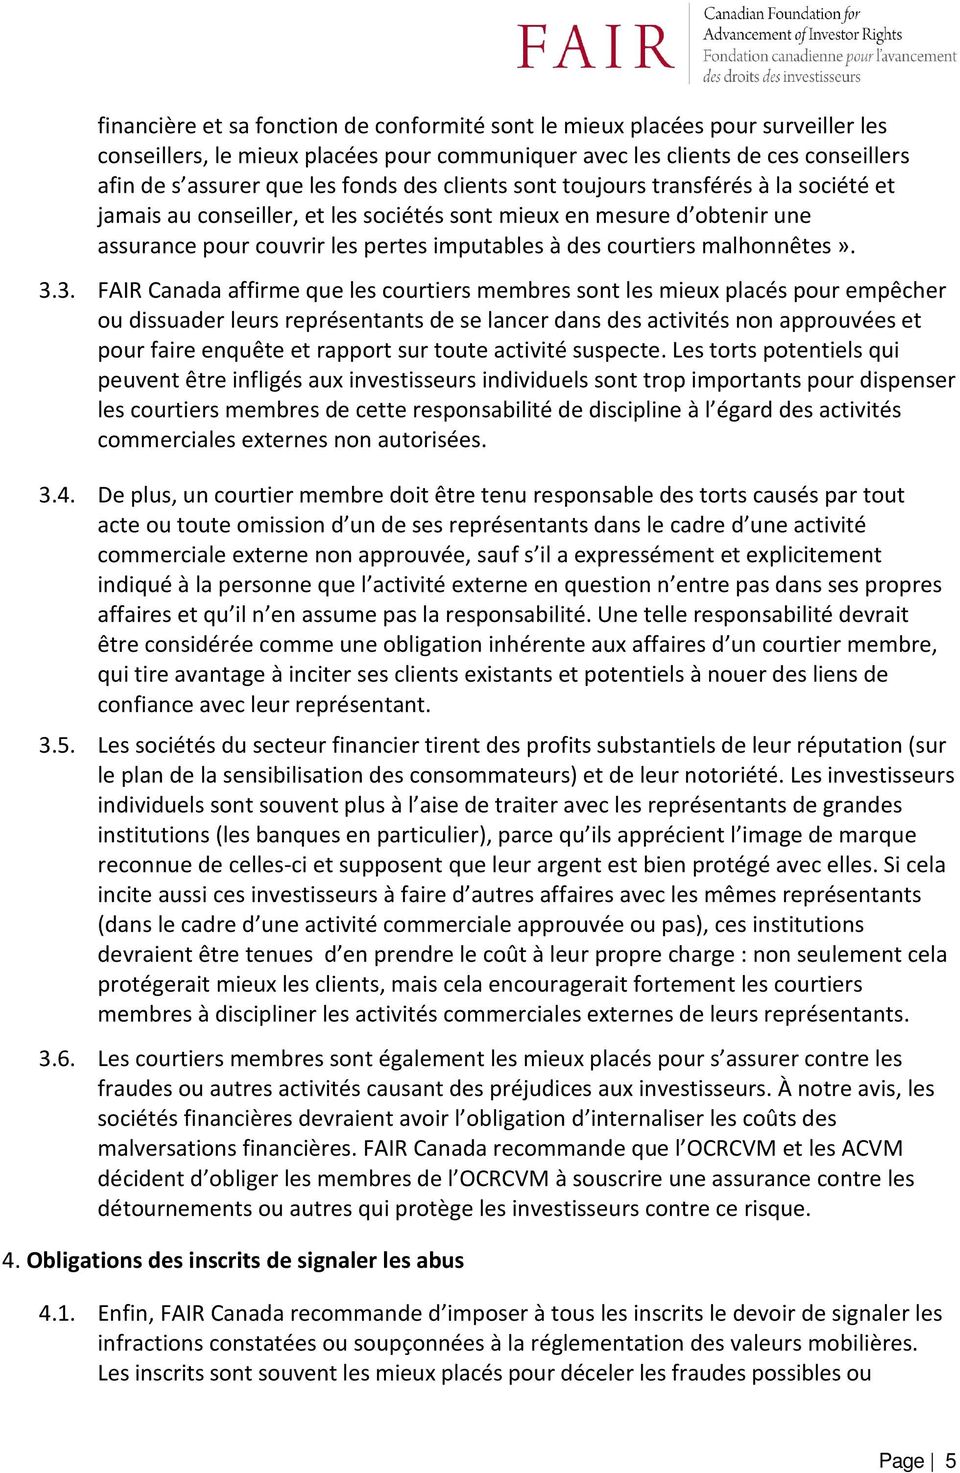 3.3. FAIR Canada affirme que les courtiers membres sont les mieux placés pour empêcher ou dissuader leurs représentants de se lancer dans des activités non approuvées et pour faire enquête et rapport